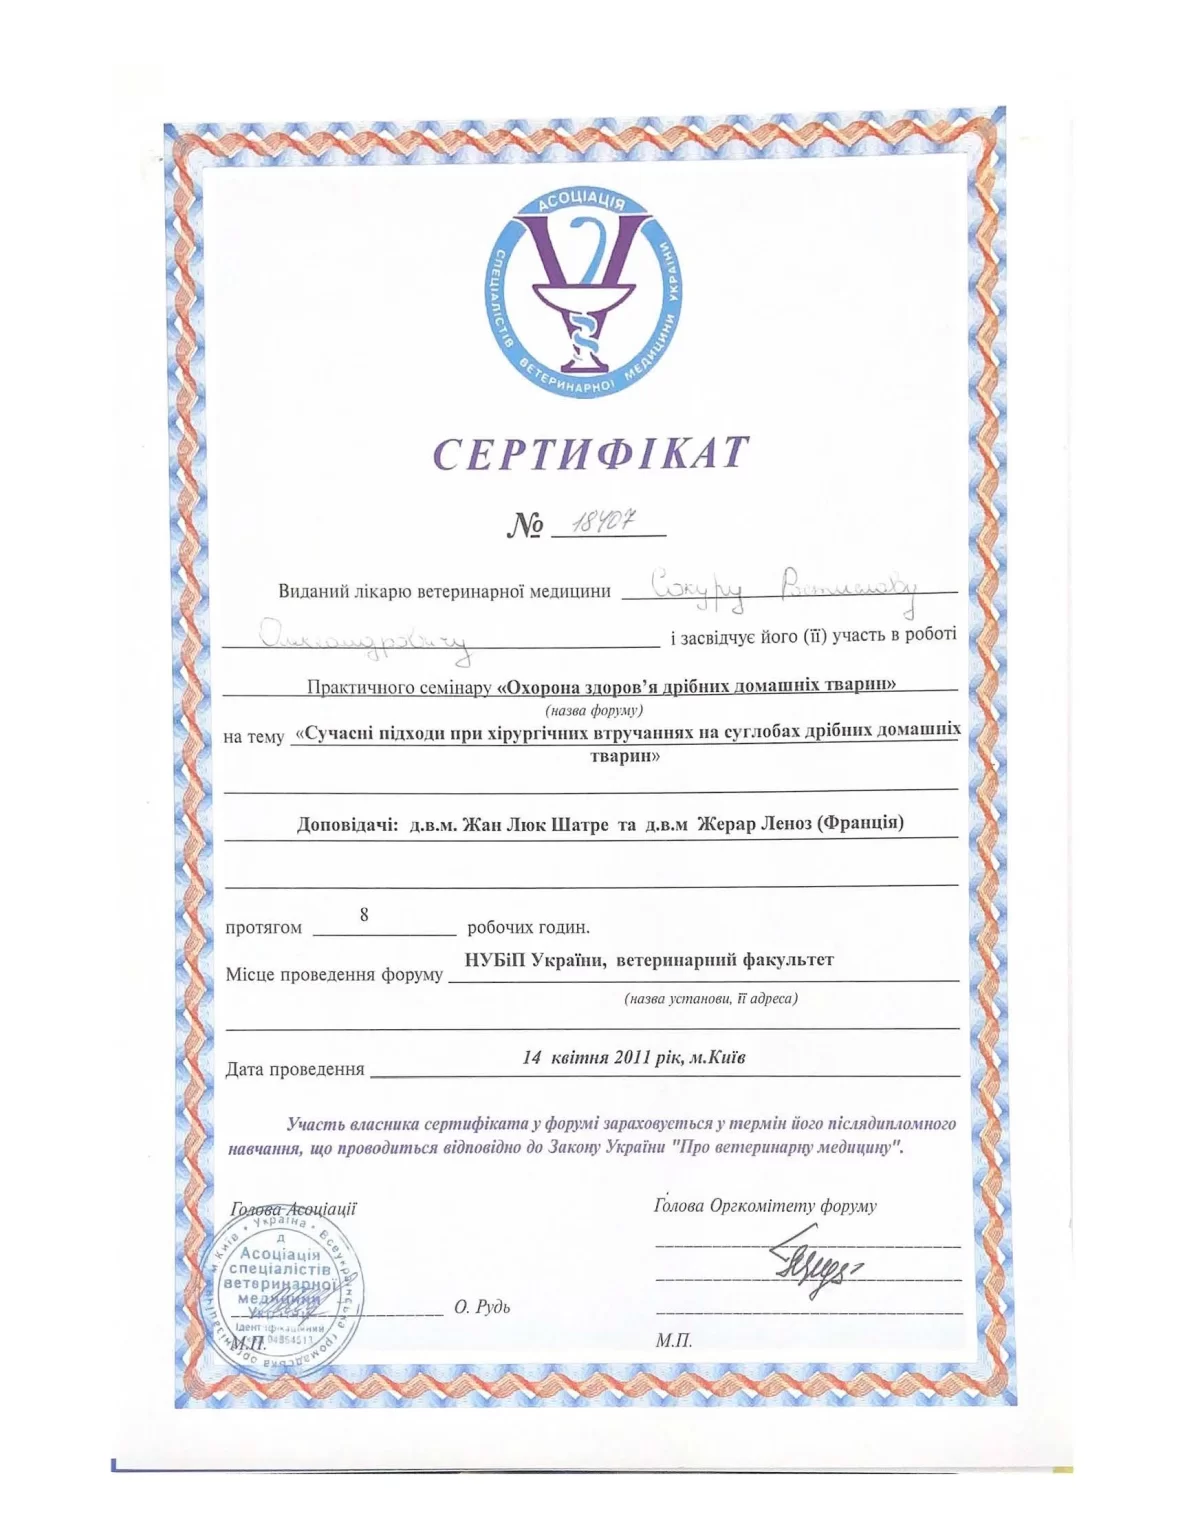 Сертифікат лікаря-ветеринара Р.Сокур